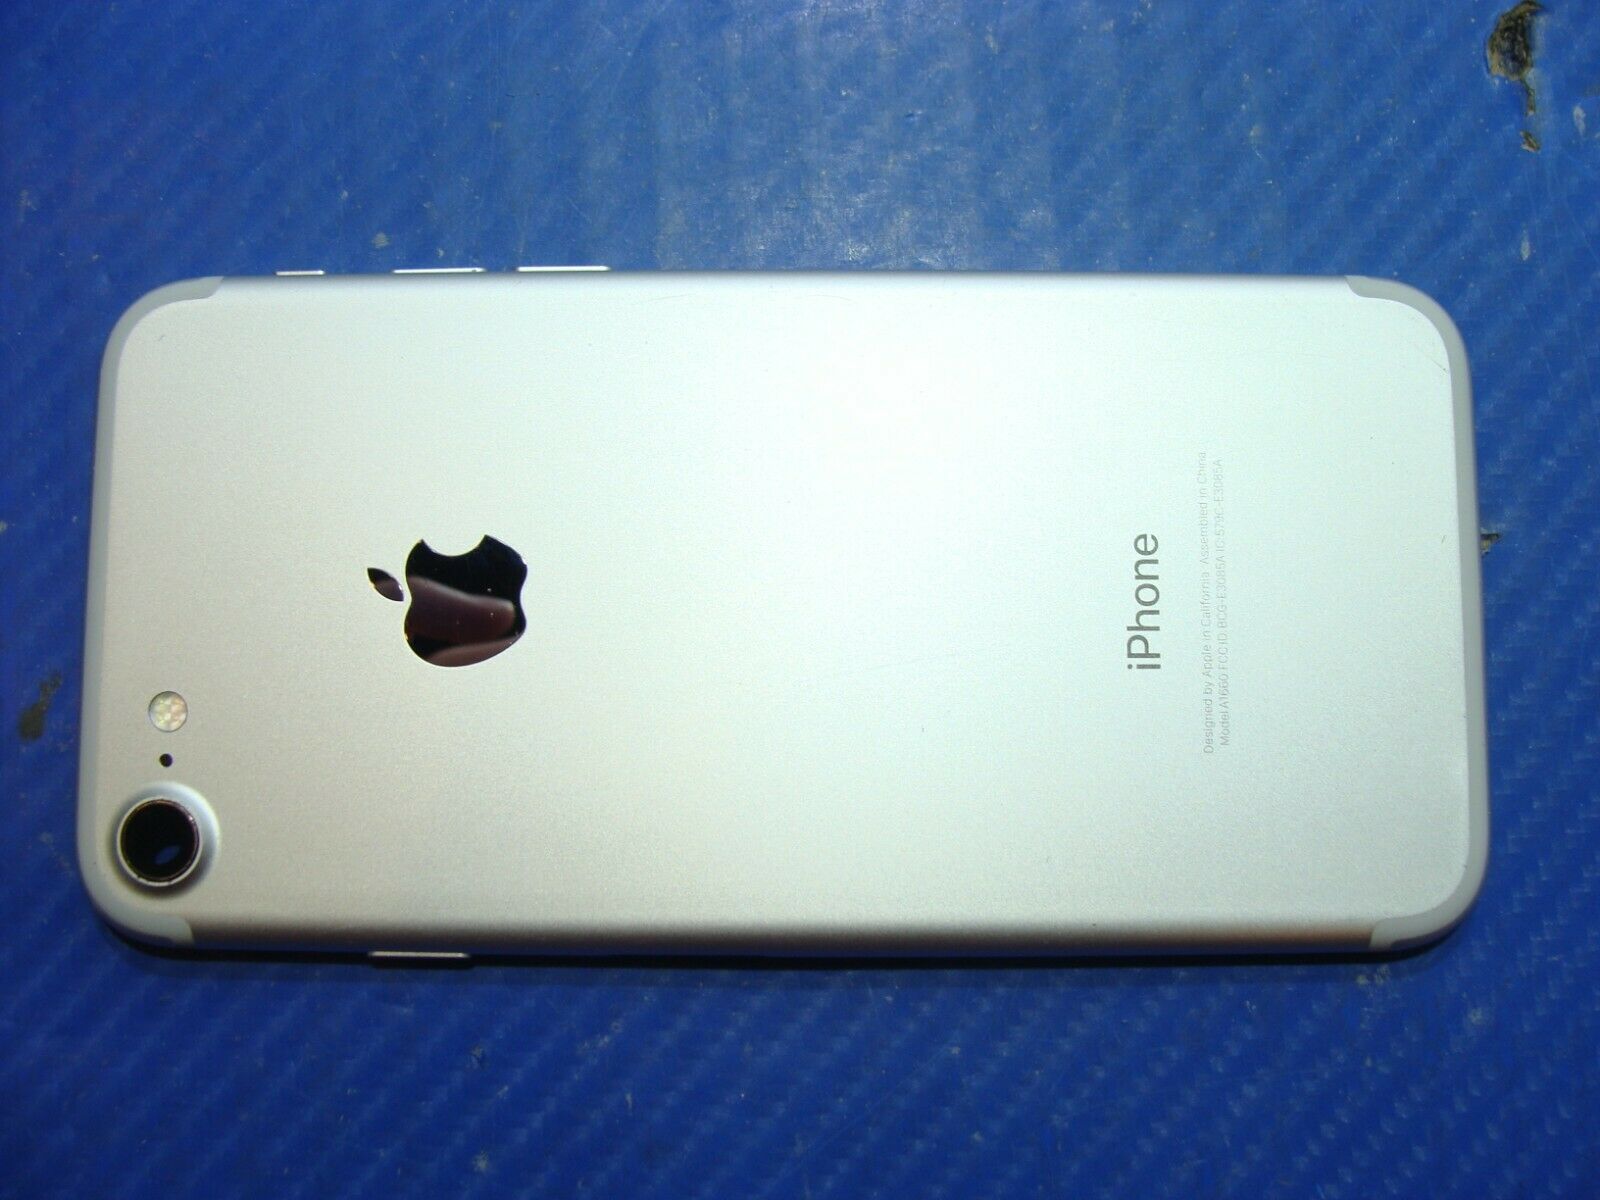 iPhone 7 A1660 4.7